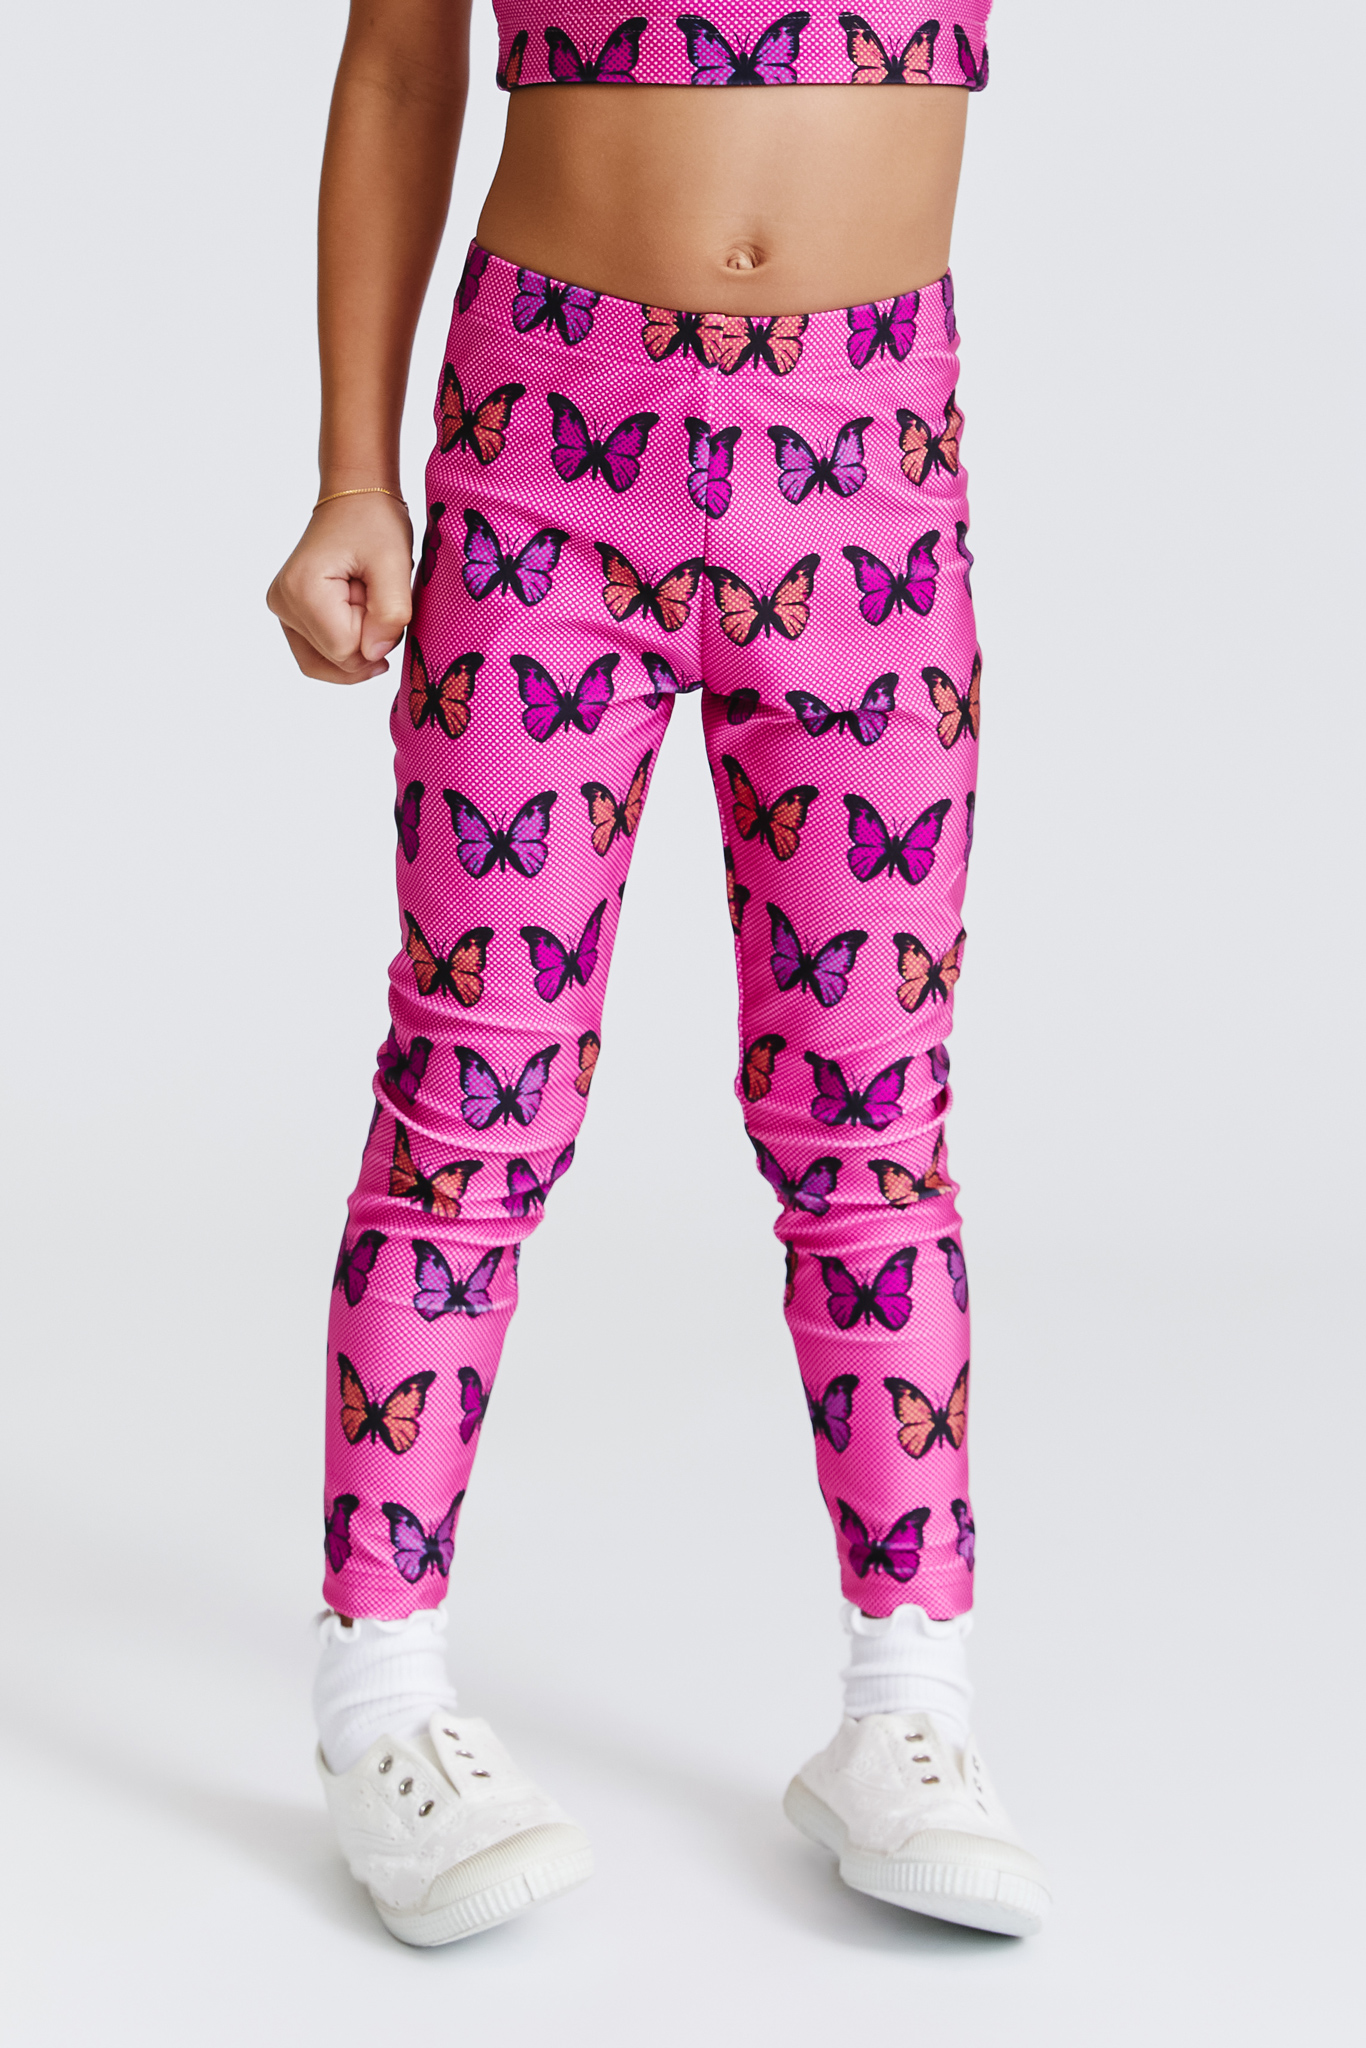 Pink Monarch Butterfly Pattern Print Women's Leggings – GearFrost